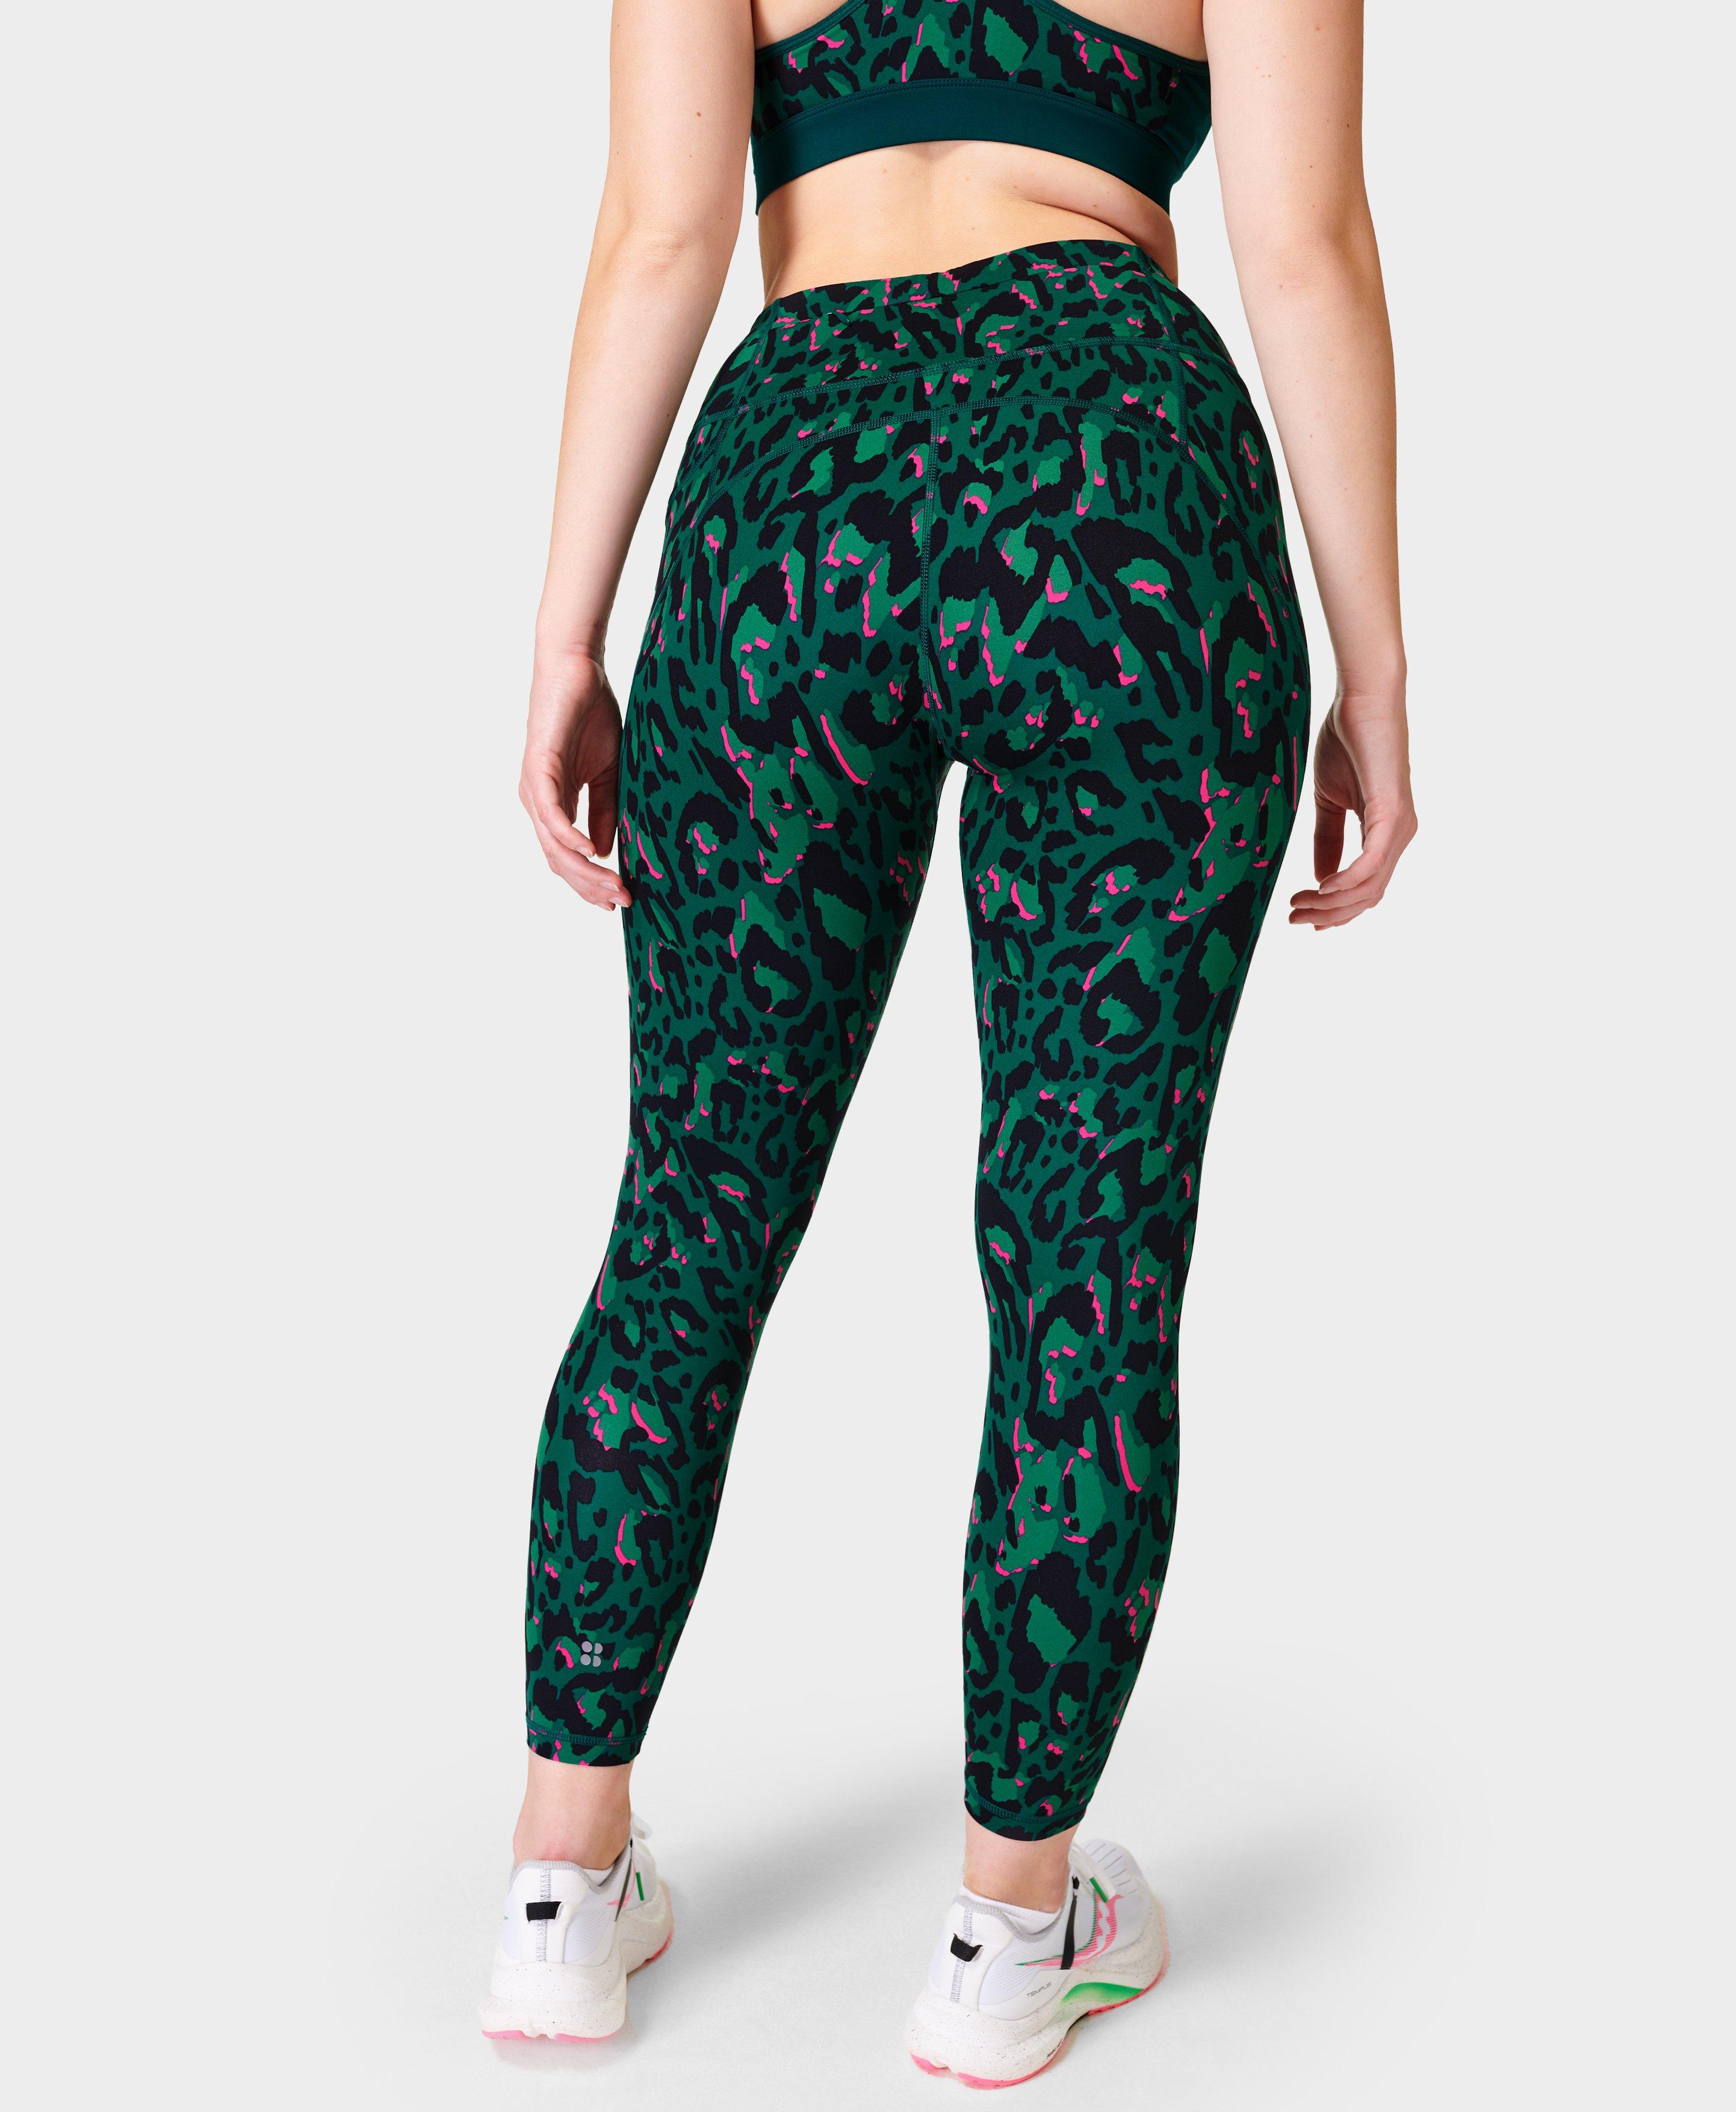 Sweaty Betty Power 7/8 Leggings in Green Leopard Print